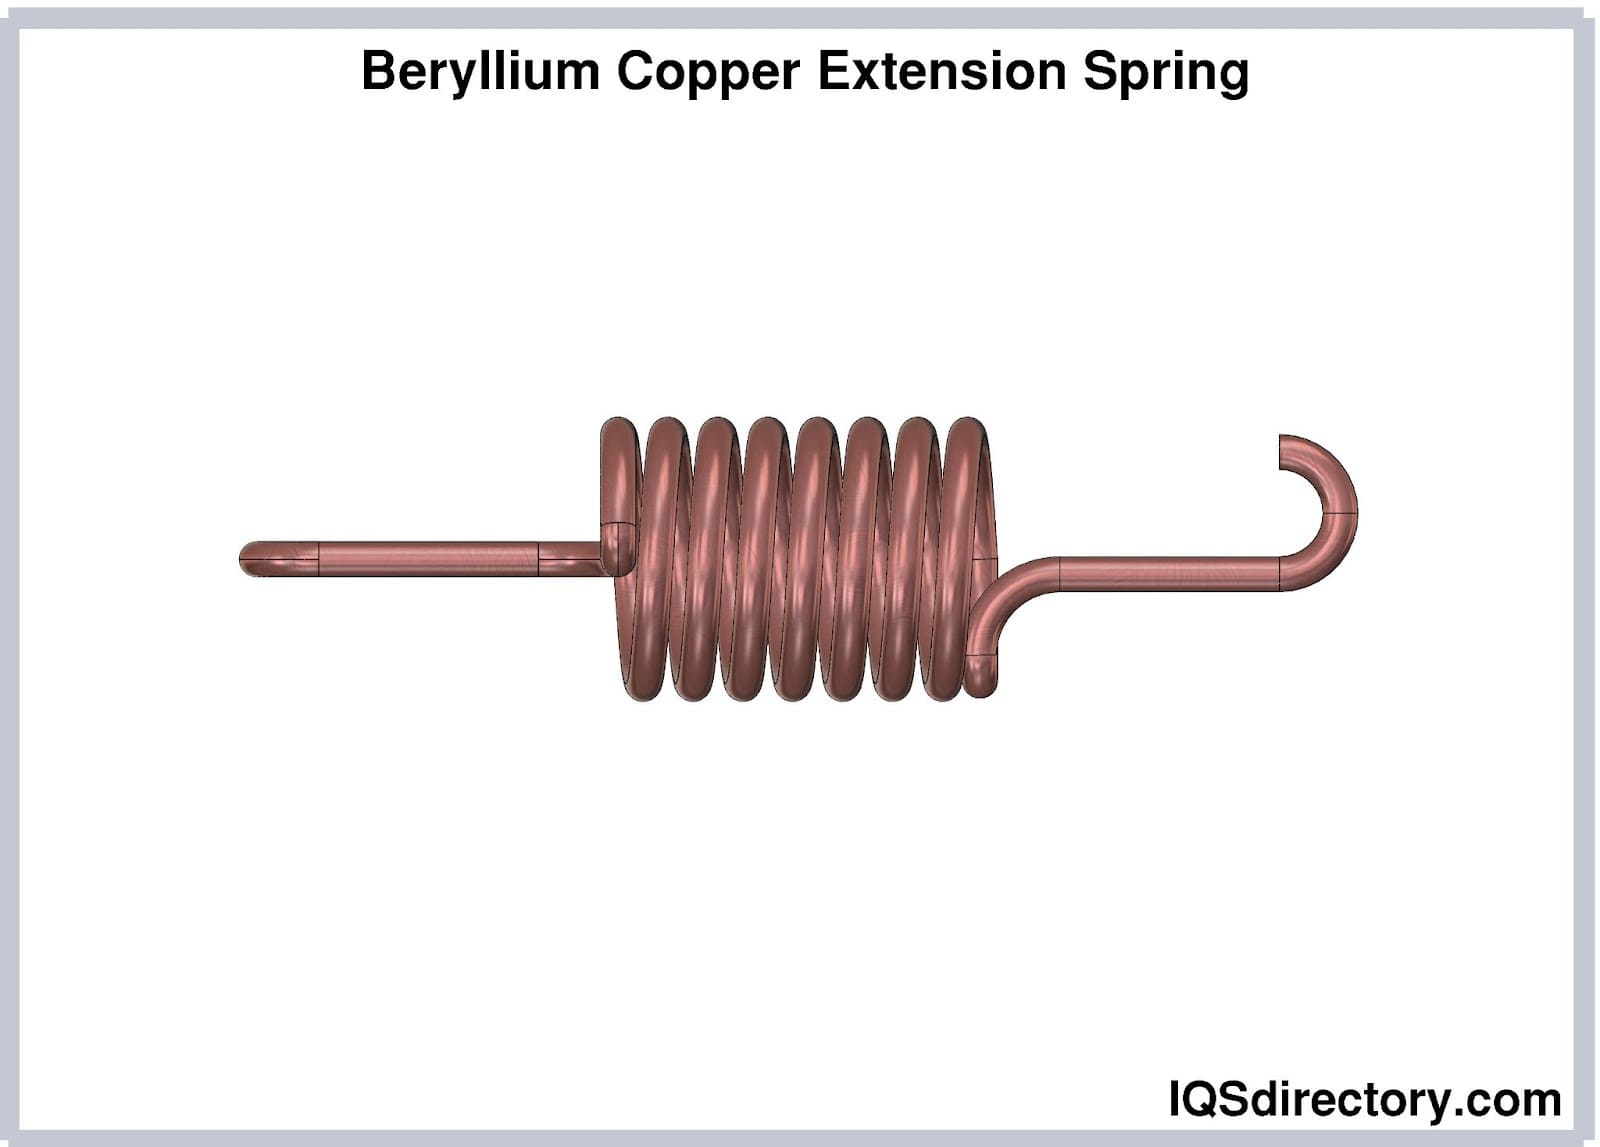 Beryllium Copper Extension Spring